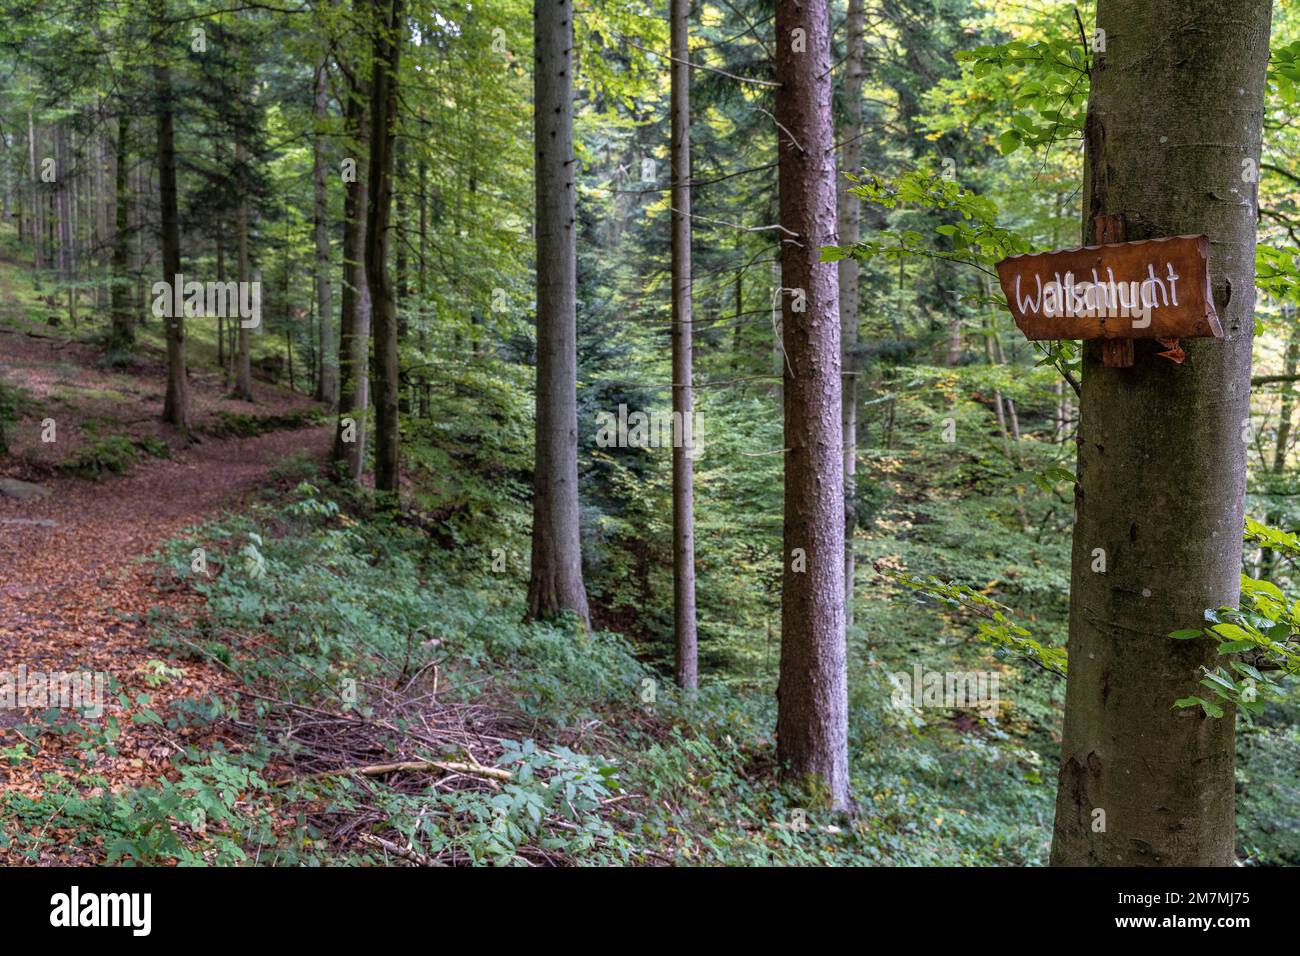 Europa, Germania, Germania meridionale, Baden-Württemberg, Foresta Nera, Hirsau, cartello in legno sulla strada per la Gola del lupo Foto Stock